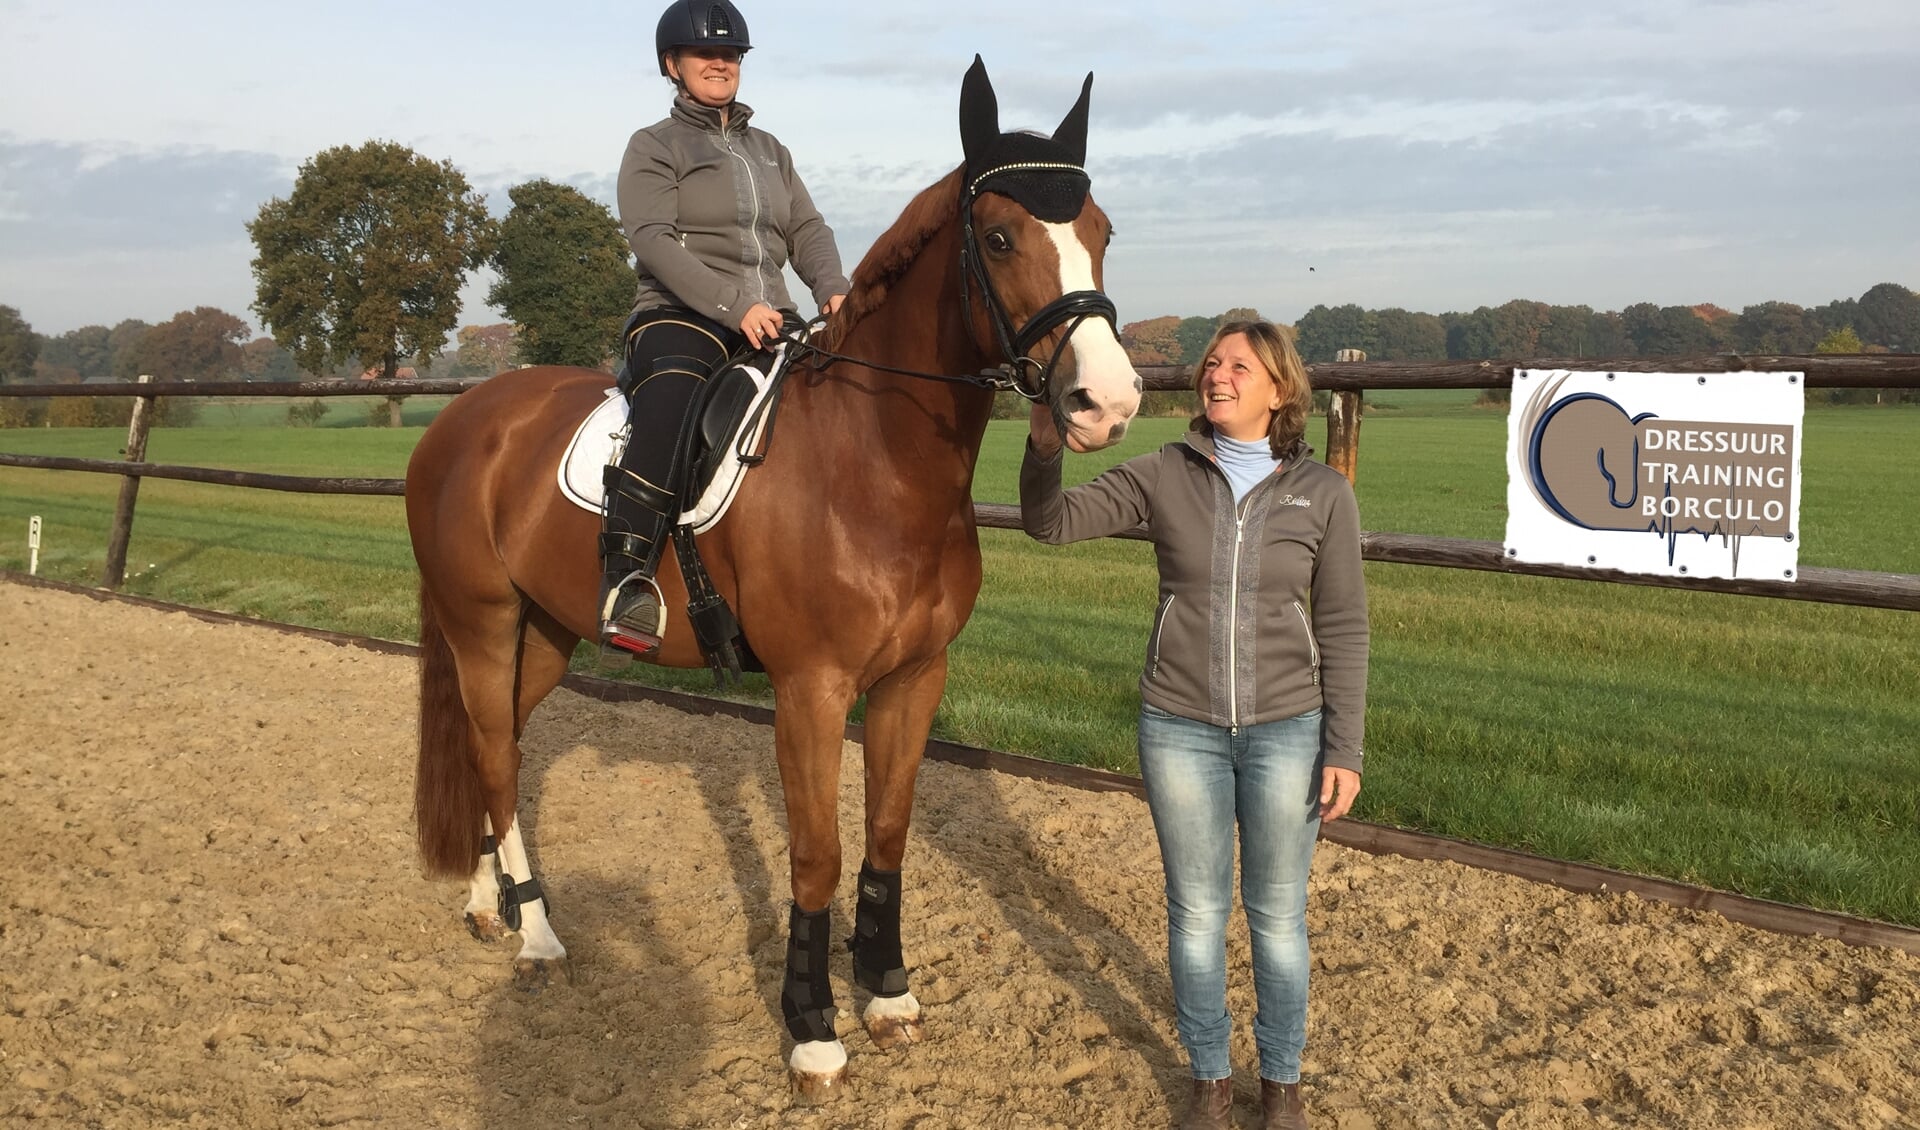 Amazone Yvette hoog te paard en trainer Ineke kijkt trots toe Foto: Peter Vorderman